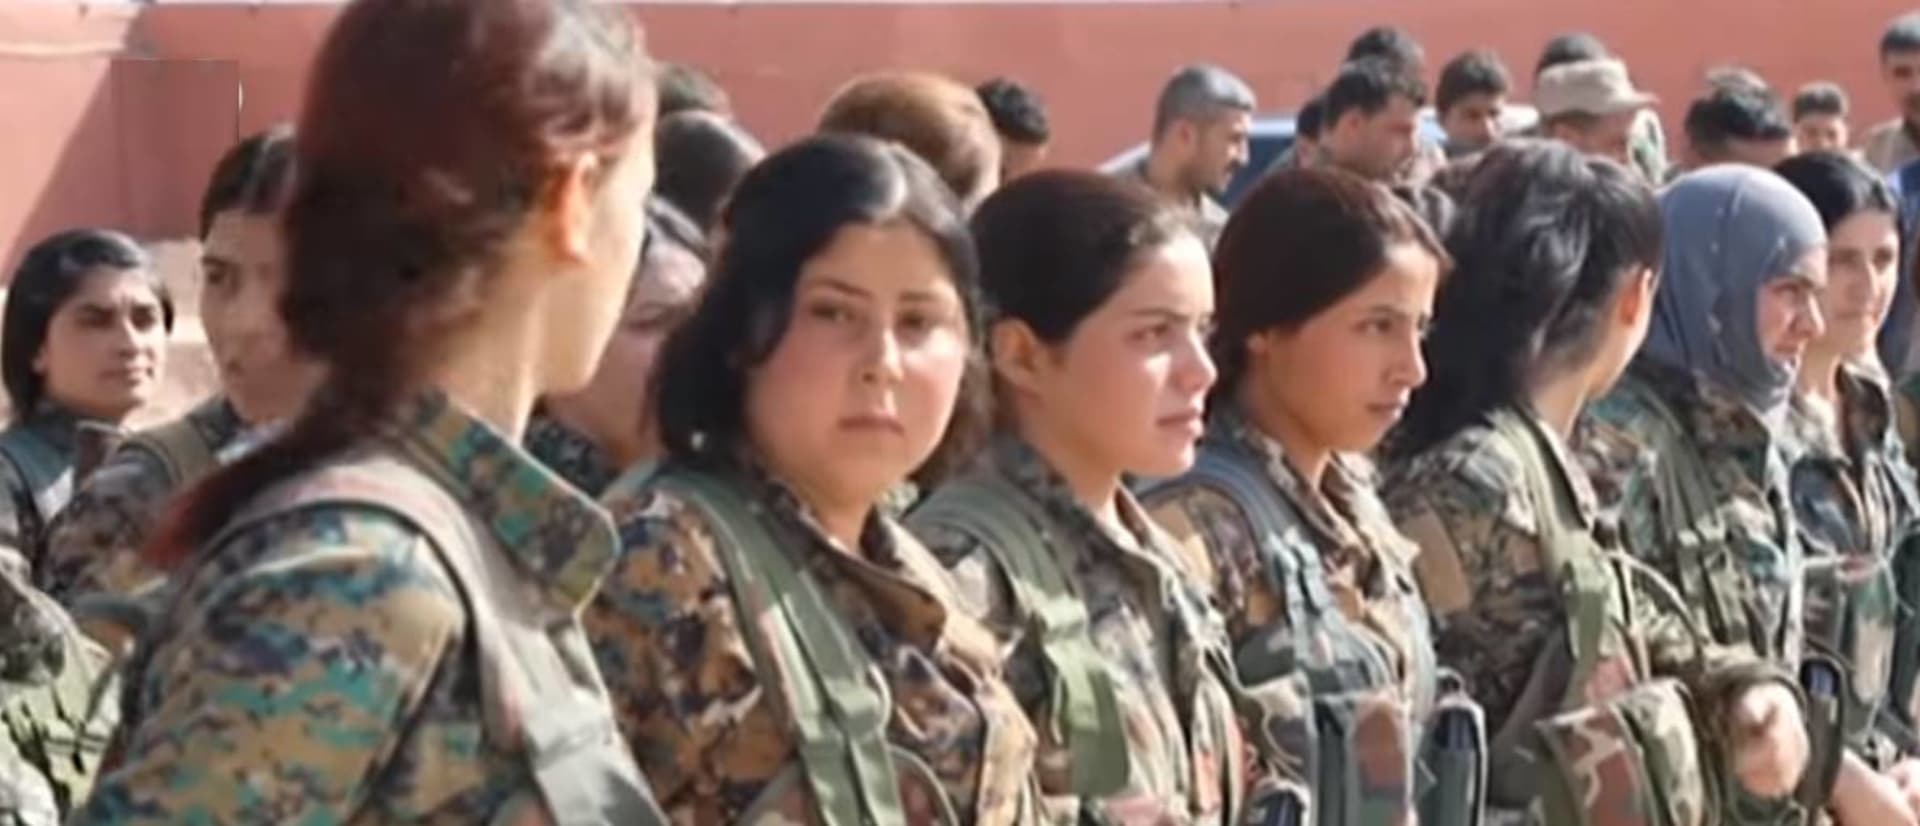 ženy jako součást kurdských milicí SDF